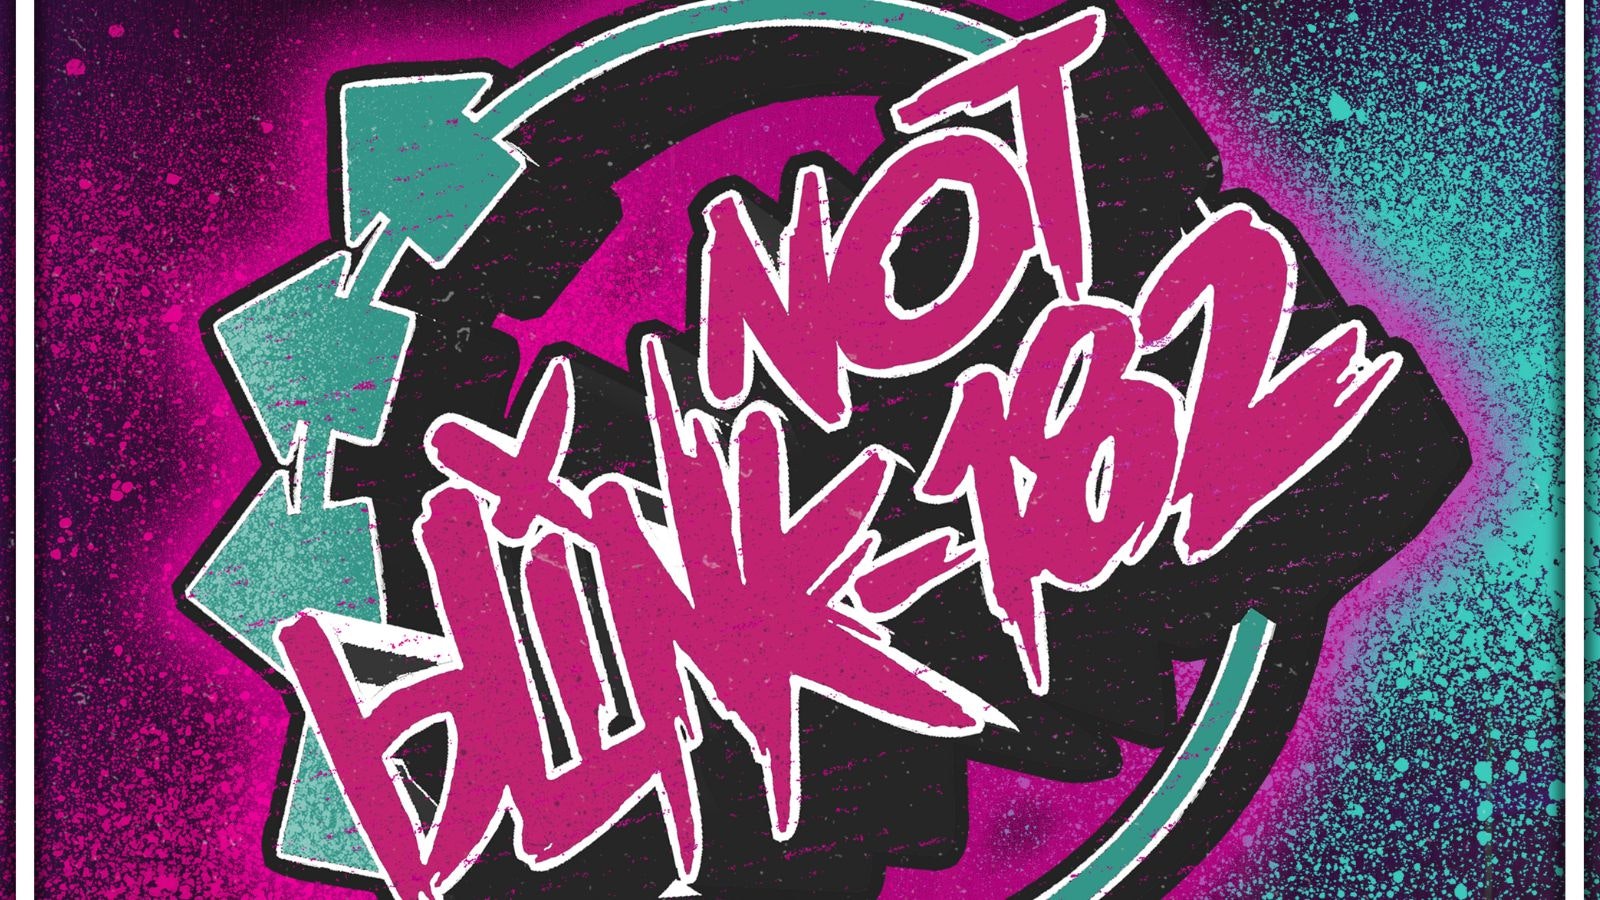 NOT Blink-182